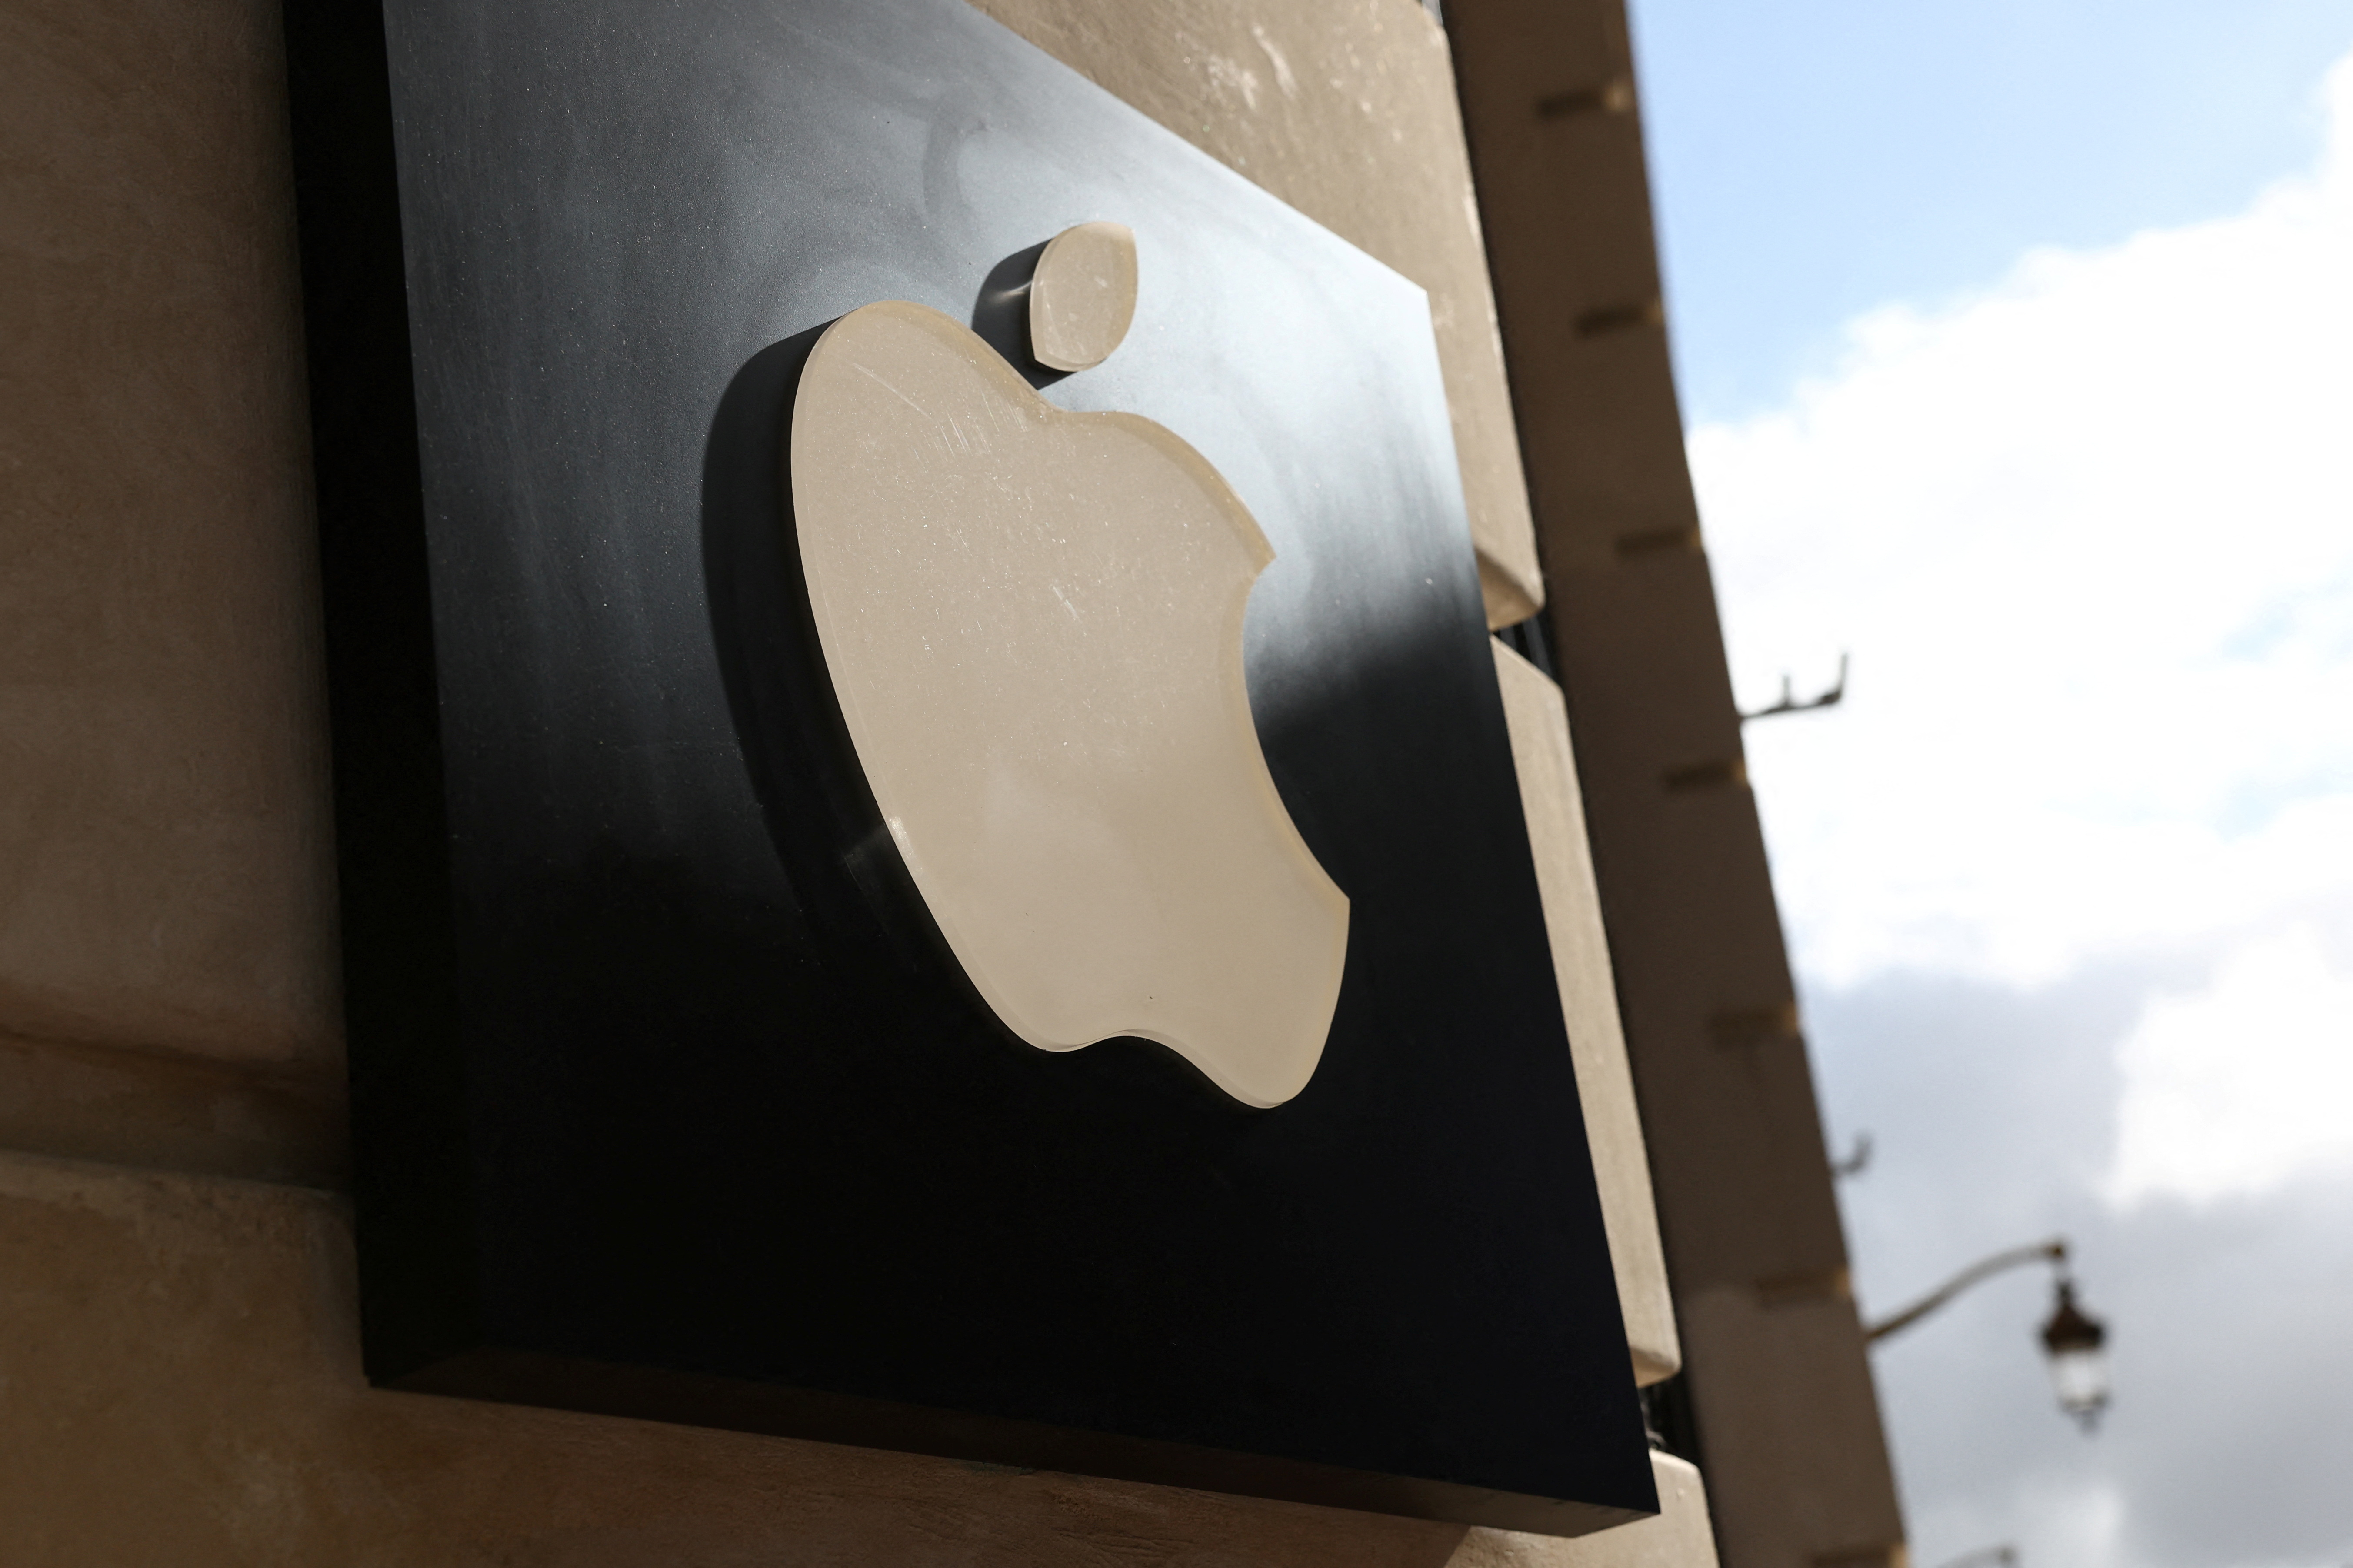 Una demanda colectiva contra Apple por las baterías del iPhone puede seguir adelante, según normas del tribunal de Londres